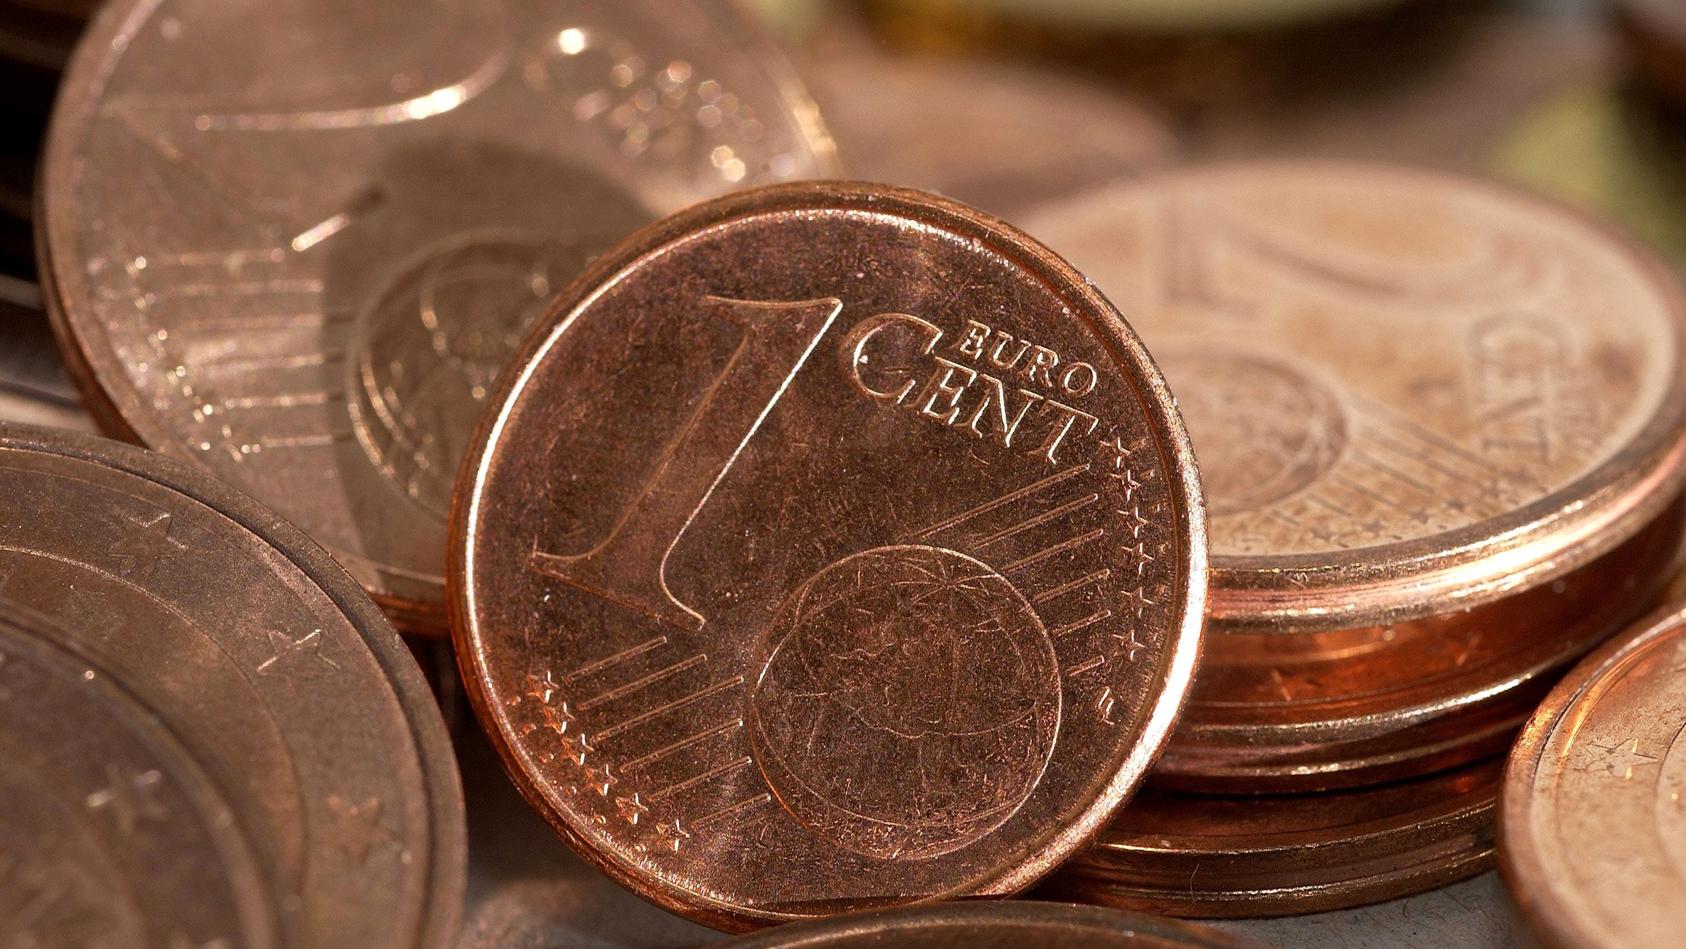 ARCHIV - Euro-Cent-Münzen liegen auf einem Haufen, aufgenommen am 10.07.2004. Foto: Karlheinz-Schindler/dpa (zu dpa:" «Wer den Pfennig nicht ehrt»: Sind Cent-Münzen noch zeitgemäß? " vom 09.10.2015) +++(c) dpa - Bildfunk+++